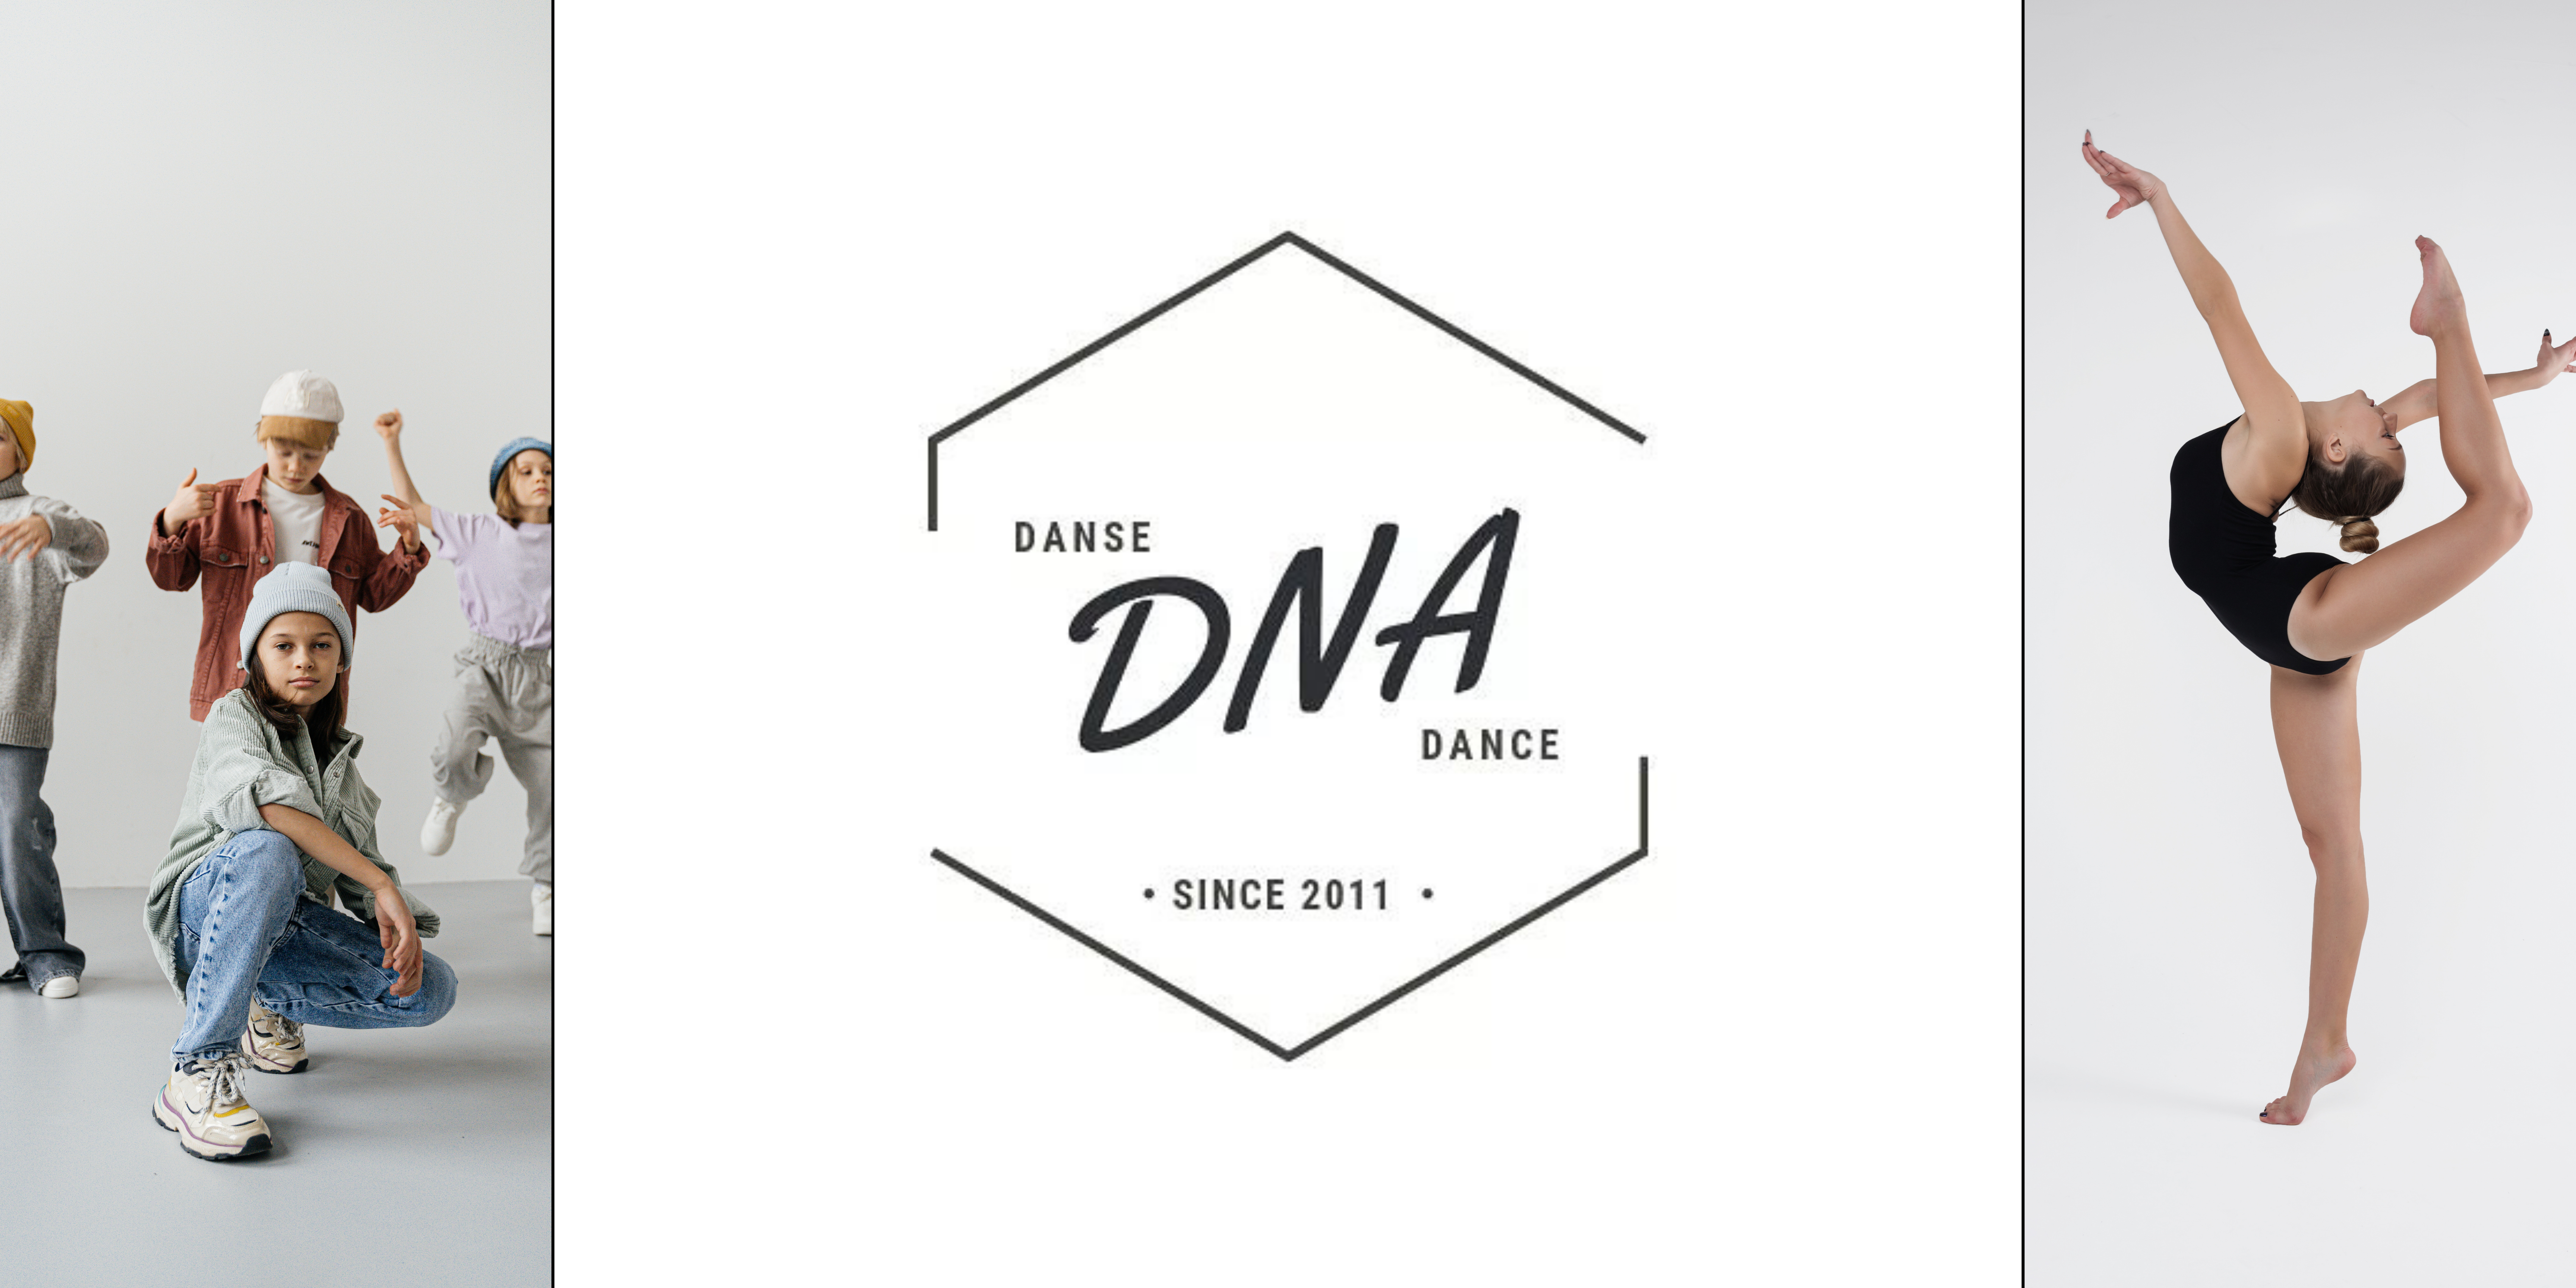 danse DNA dance